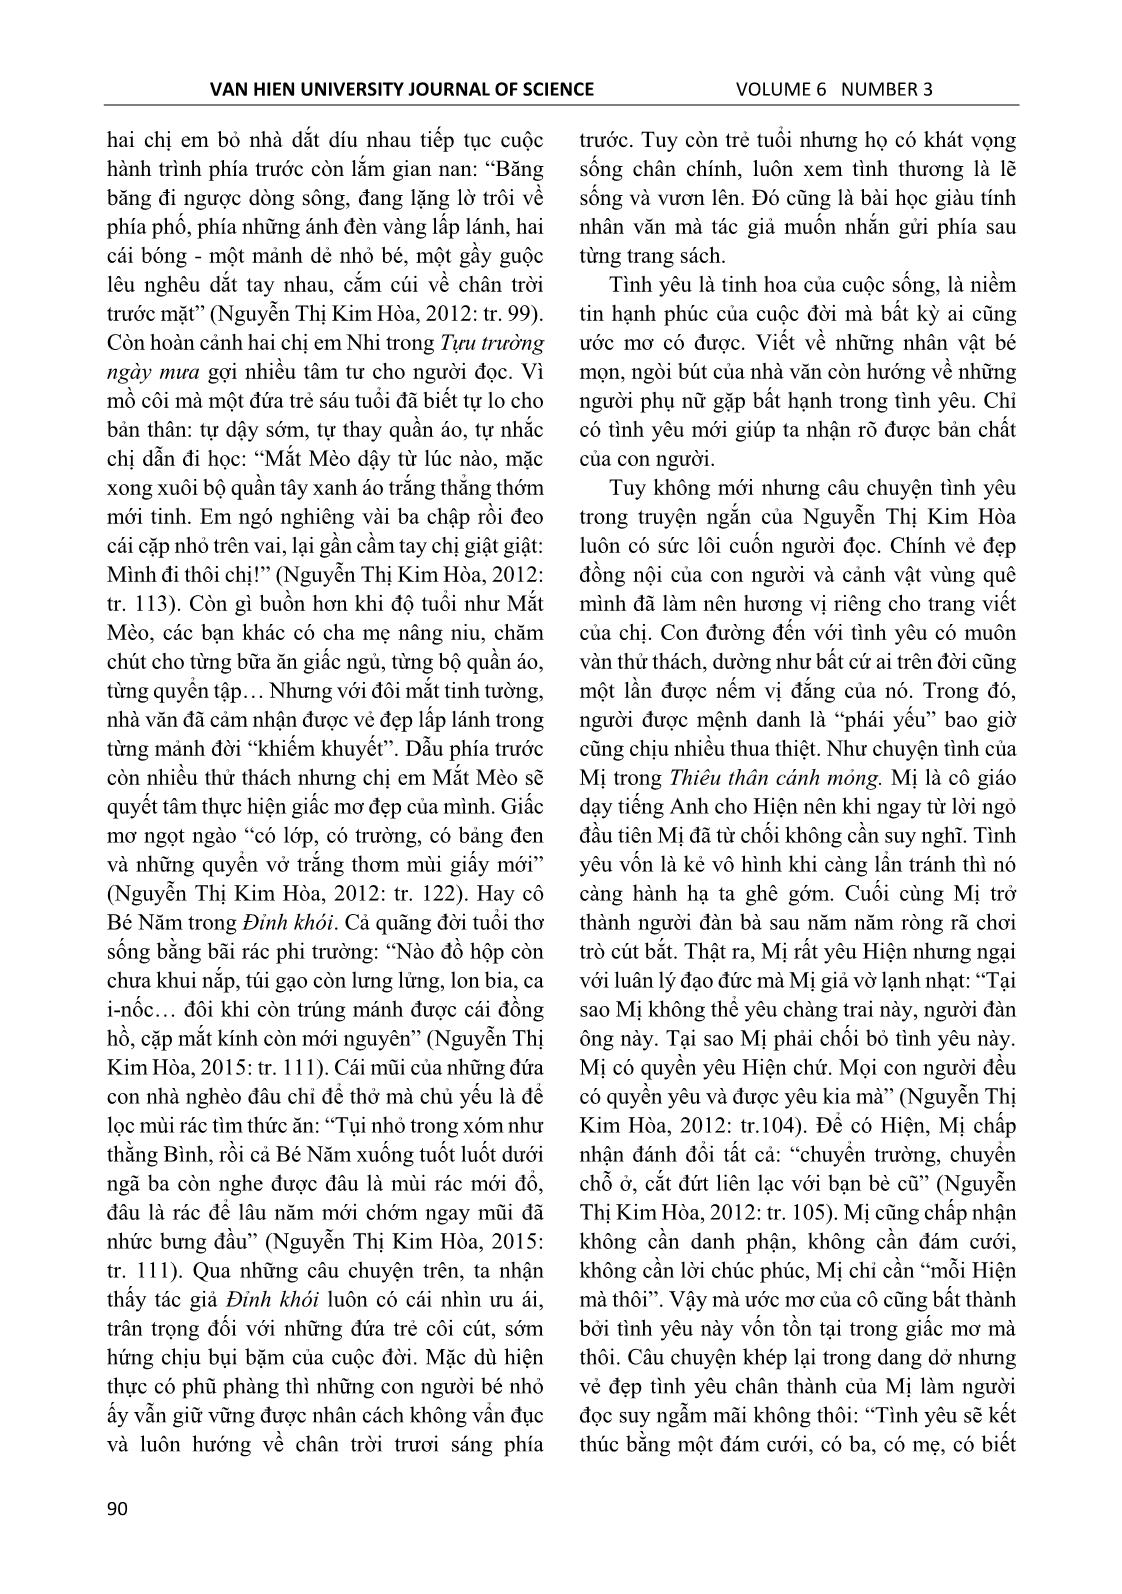 Cảm hứng nhân văn trong văn xuôi Nguyễn Thị Kim Hòa trang 3